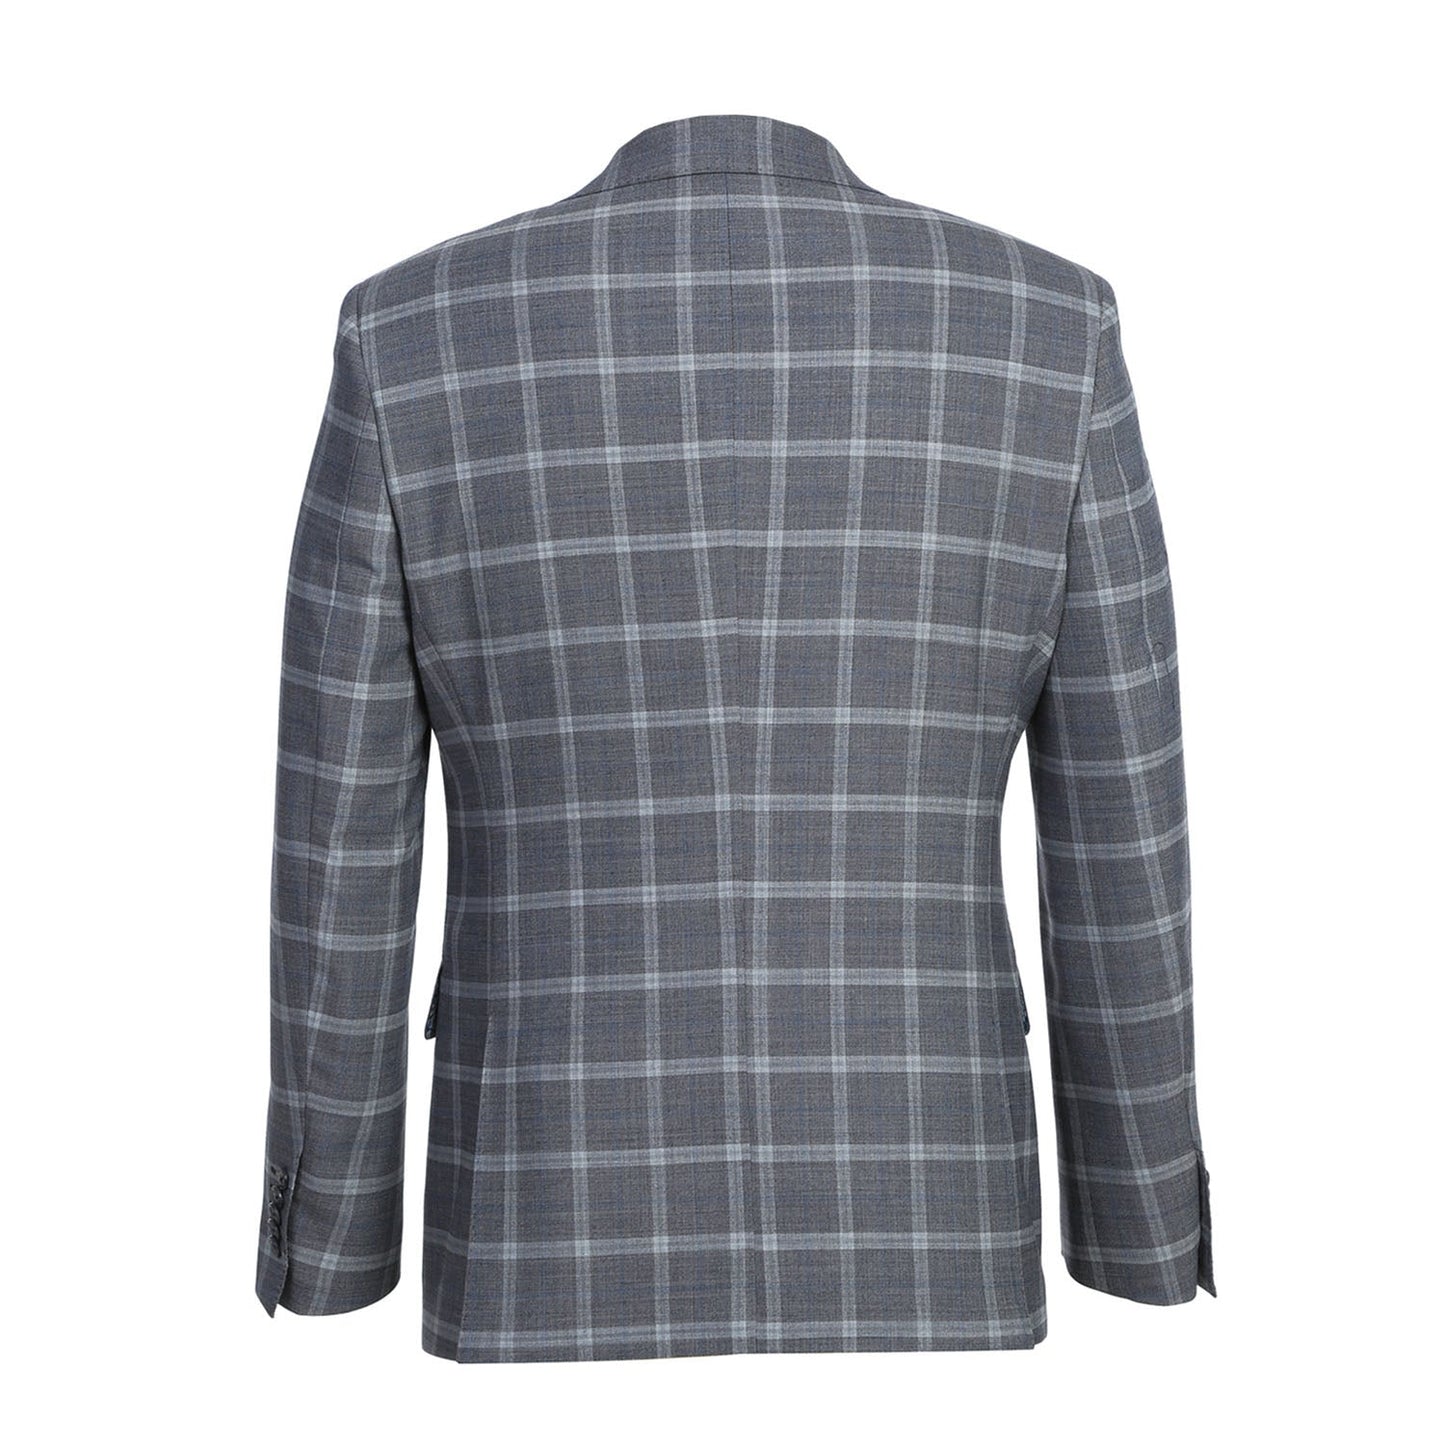 EL72-60-092 Slim Fit English Laundry Gray Plaid Notch Lapel Wool Blend Suit